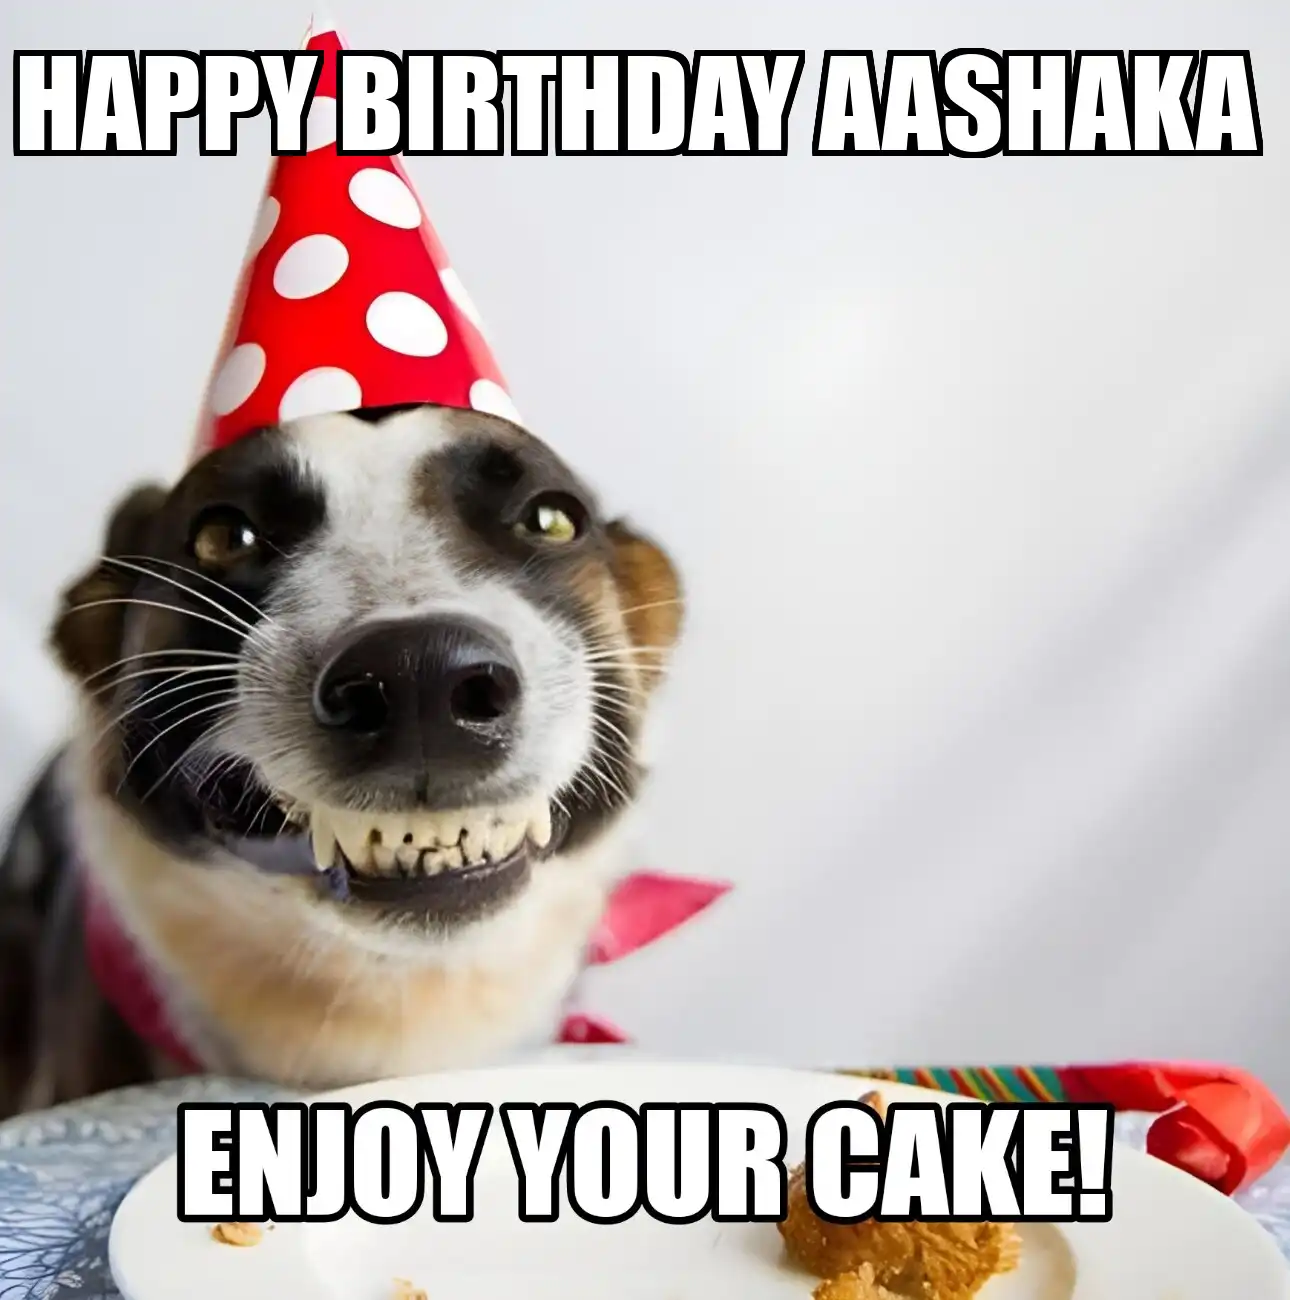 Happy Birthday Aashaka Enjoy Your Cake Dog Meme